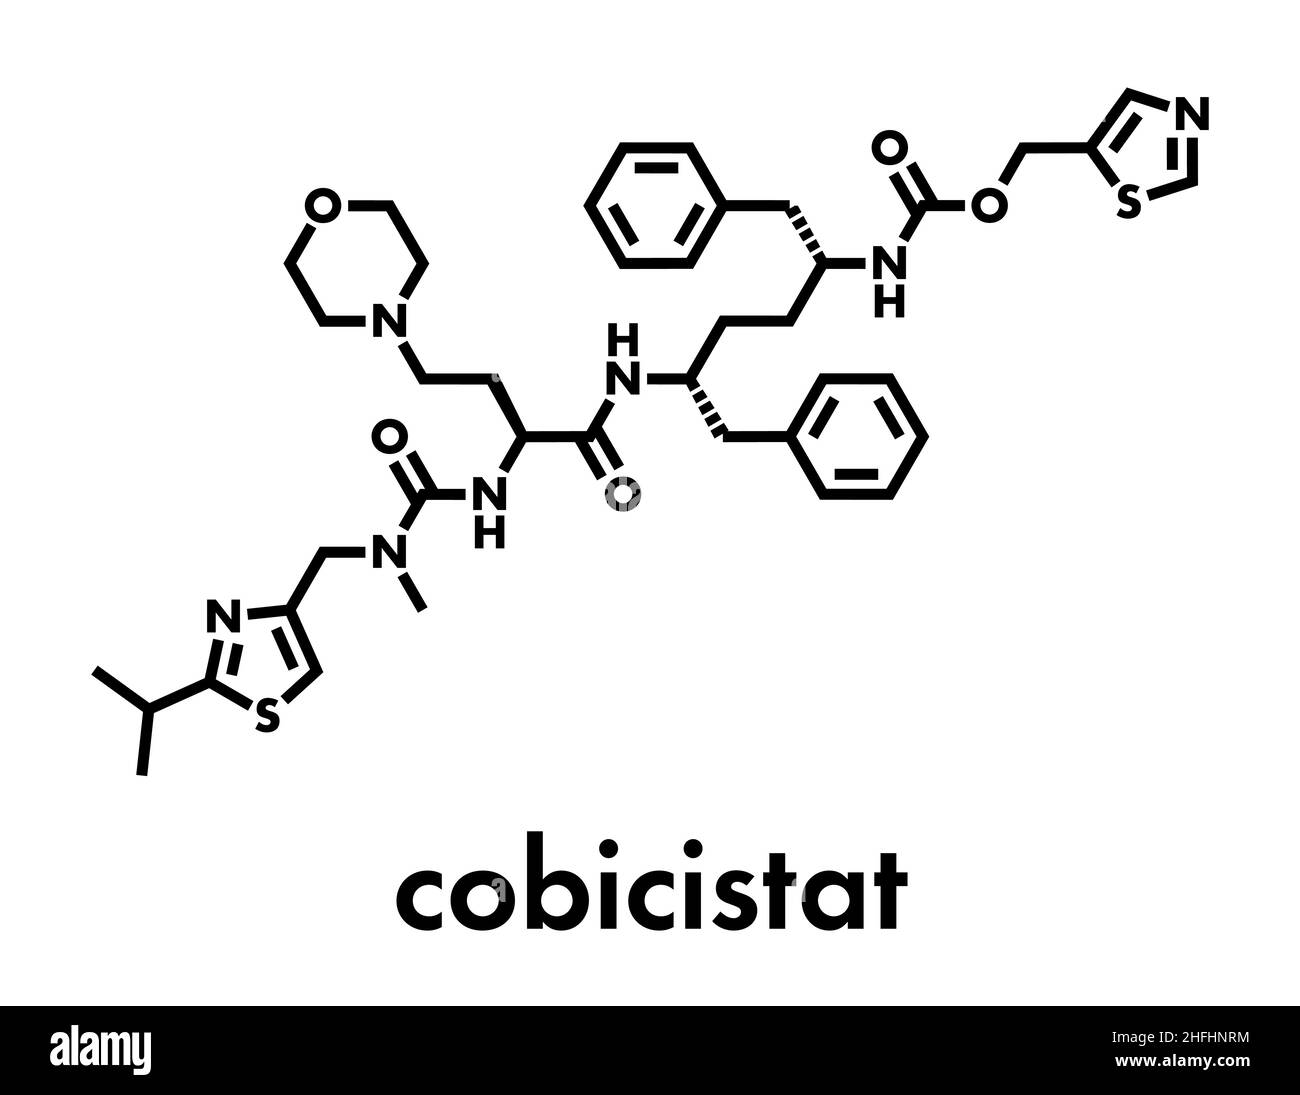 Molecola di farmaco inibitore del citocromo P450 di Cobicistat. Aumenta l'esposizione di vari farmaci HIV inibendo la loro rottura da parte degli enzimi metabolici, comprende Illustrazione Vettoriale